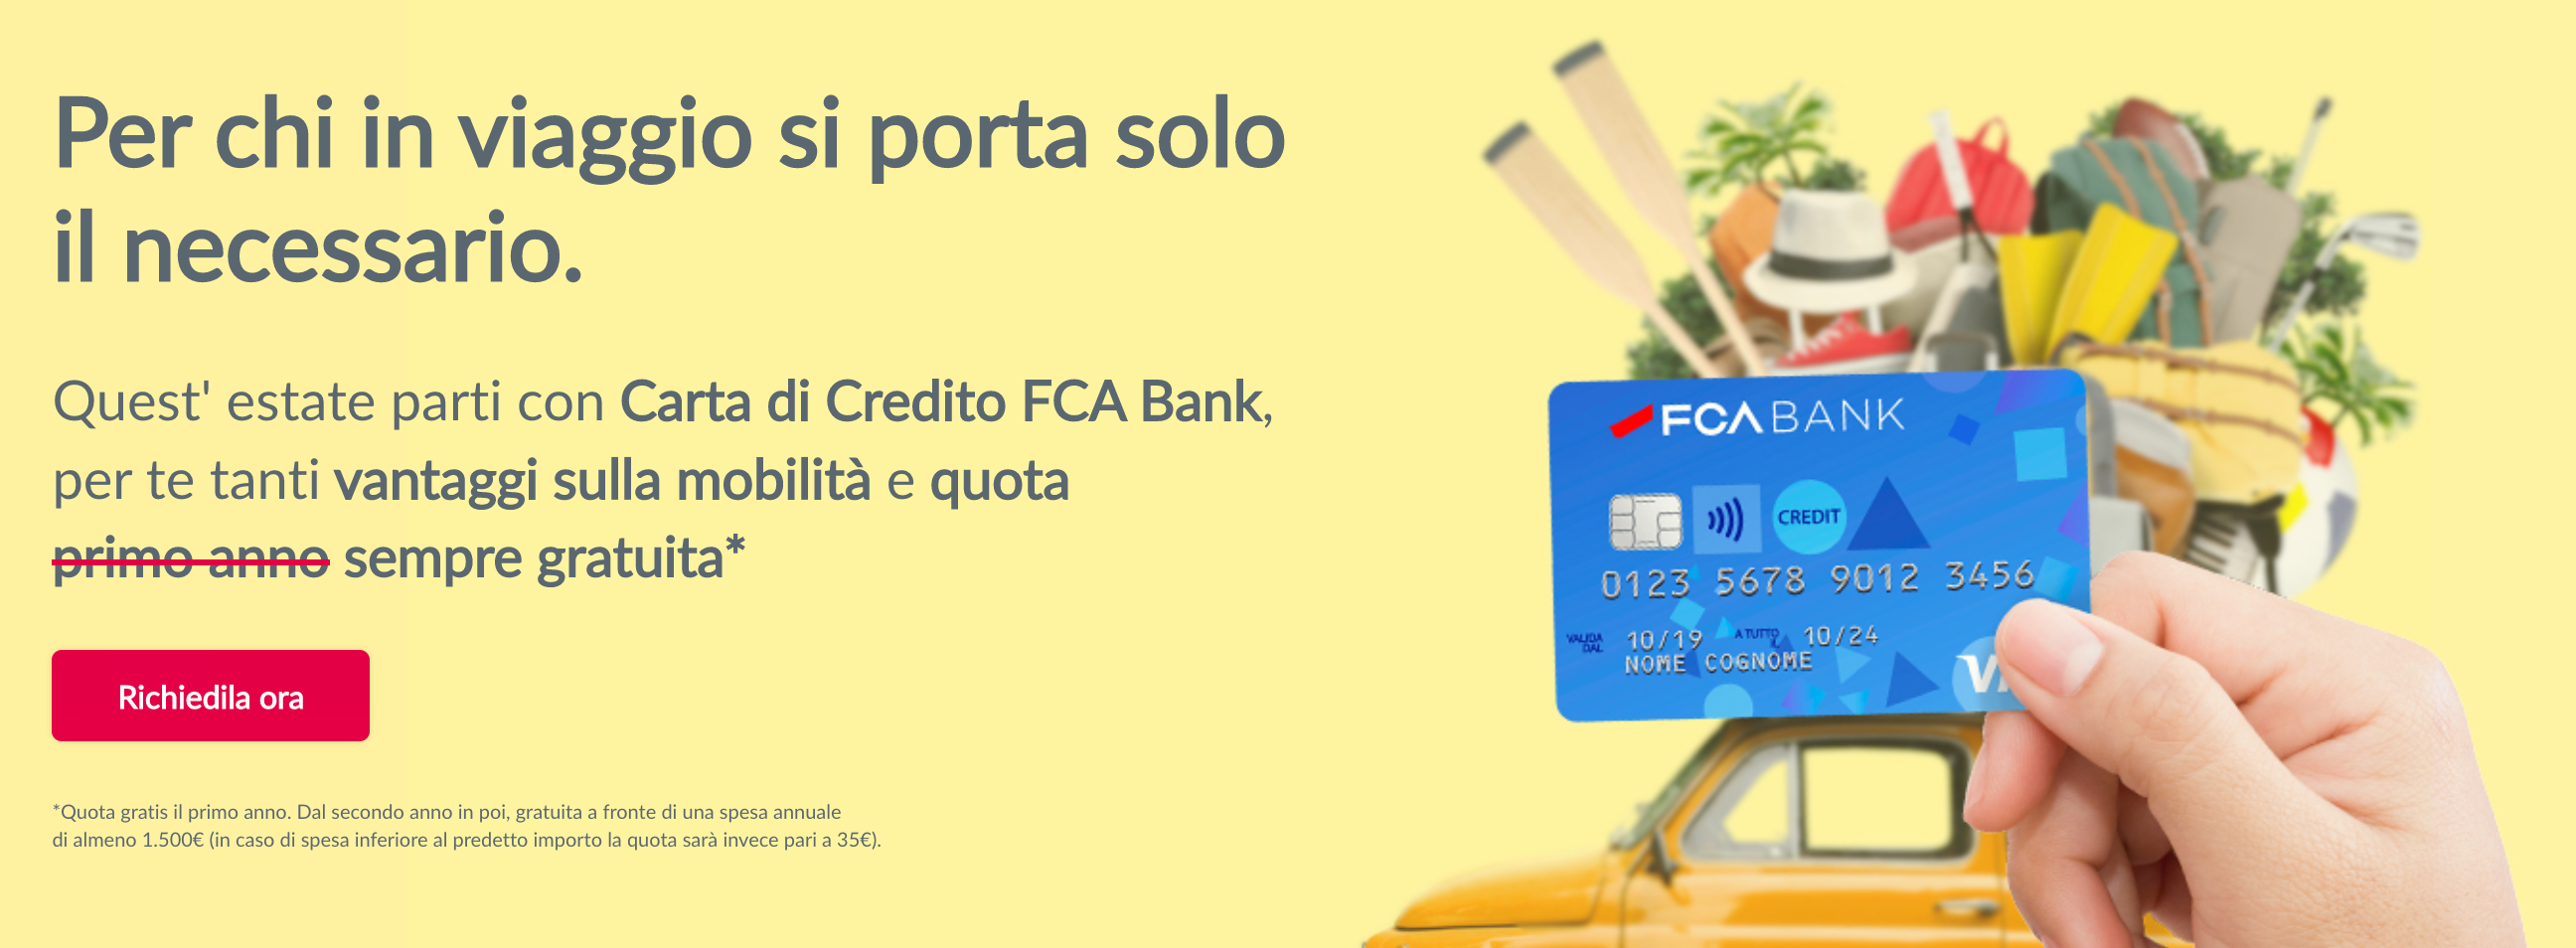 Il banner della promozione della carta di credito FCA